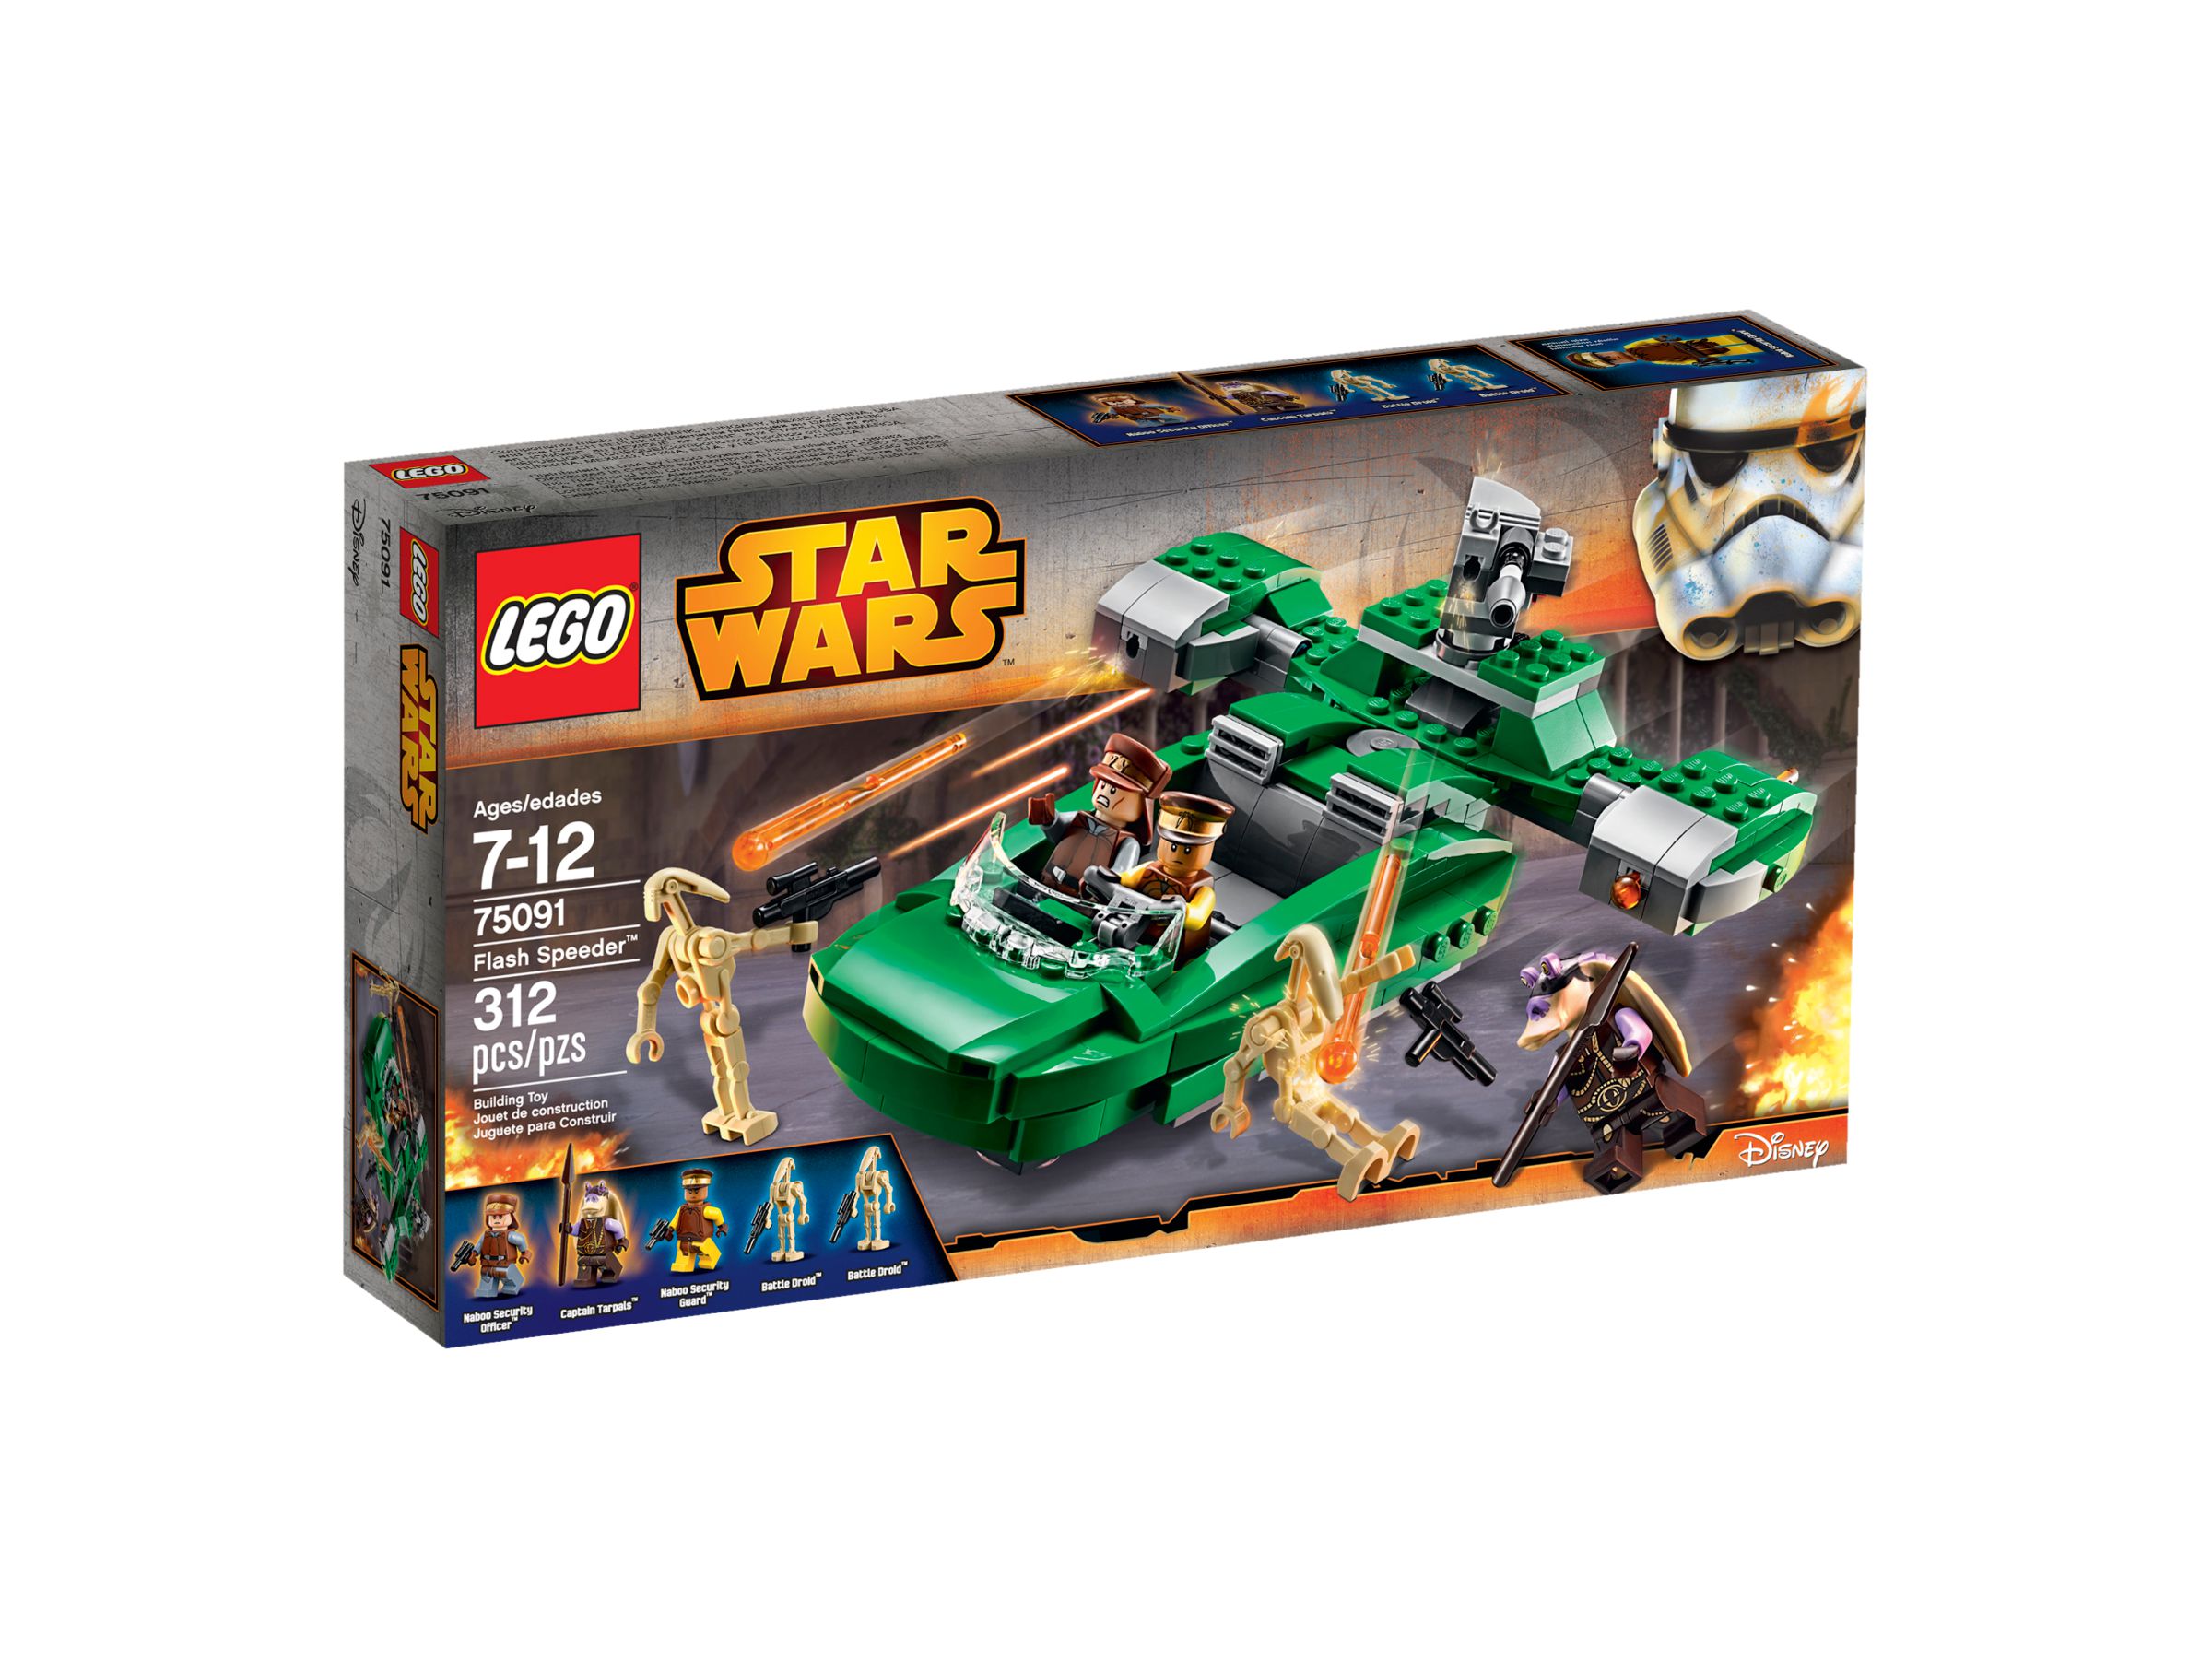 LEGO Star Wars 75091 Flash Speeder™ LEGO_75091_alt1.jpg